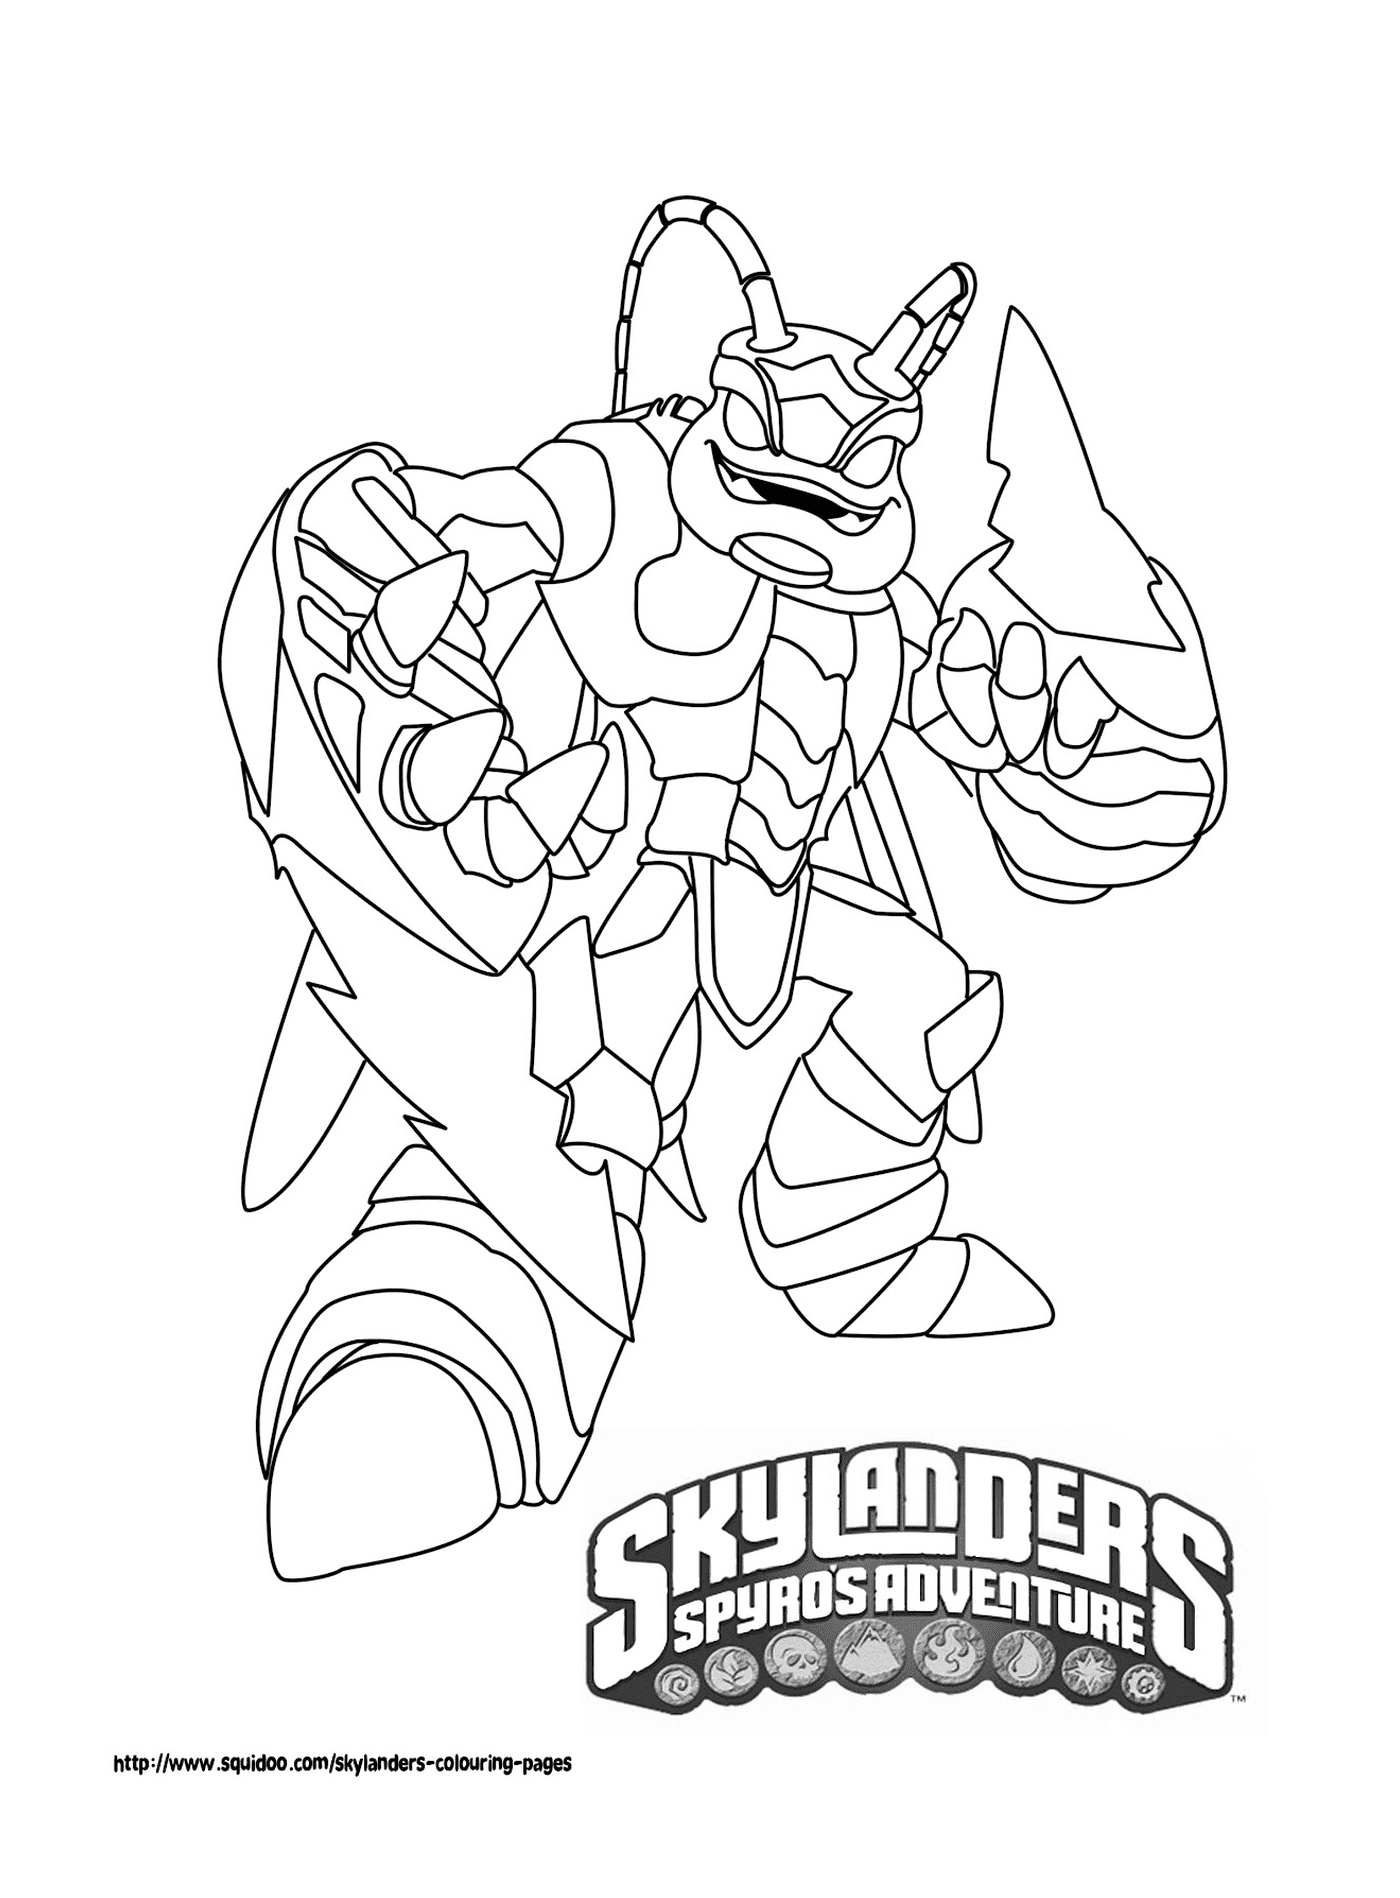  Character of Skylanders 